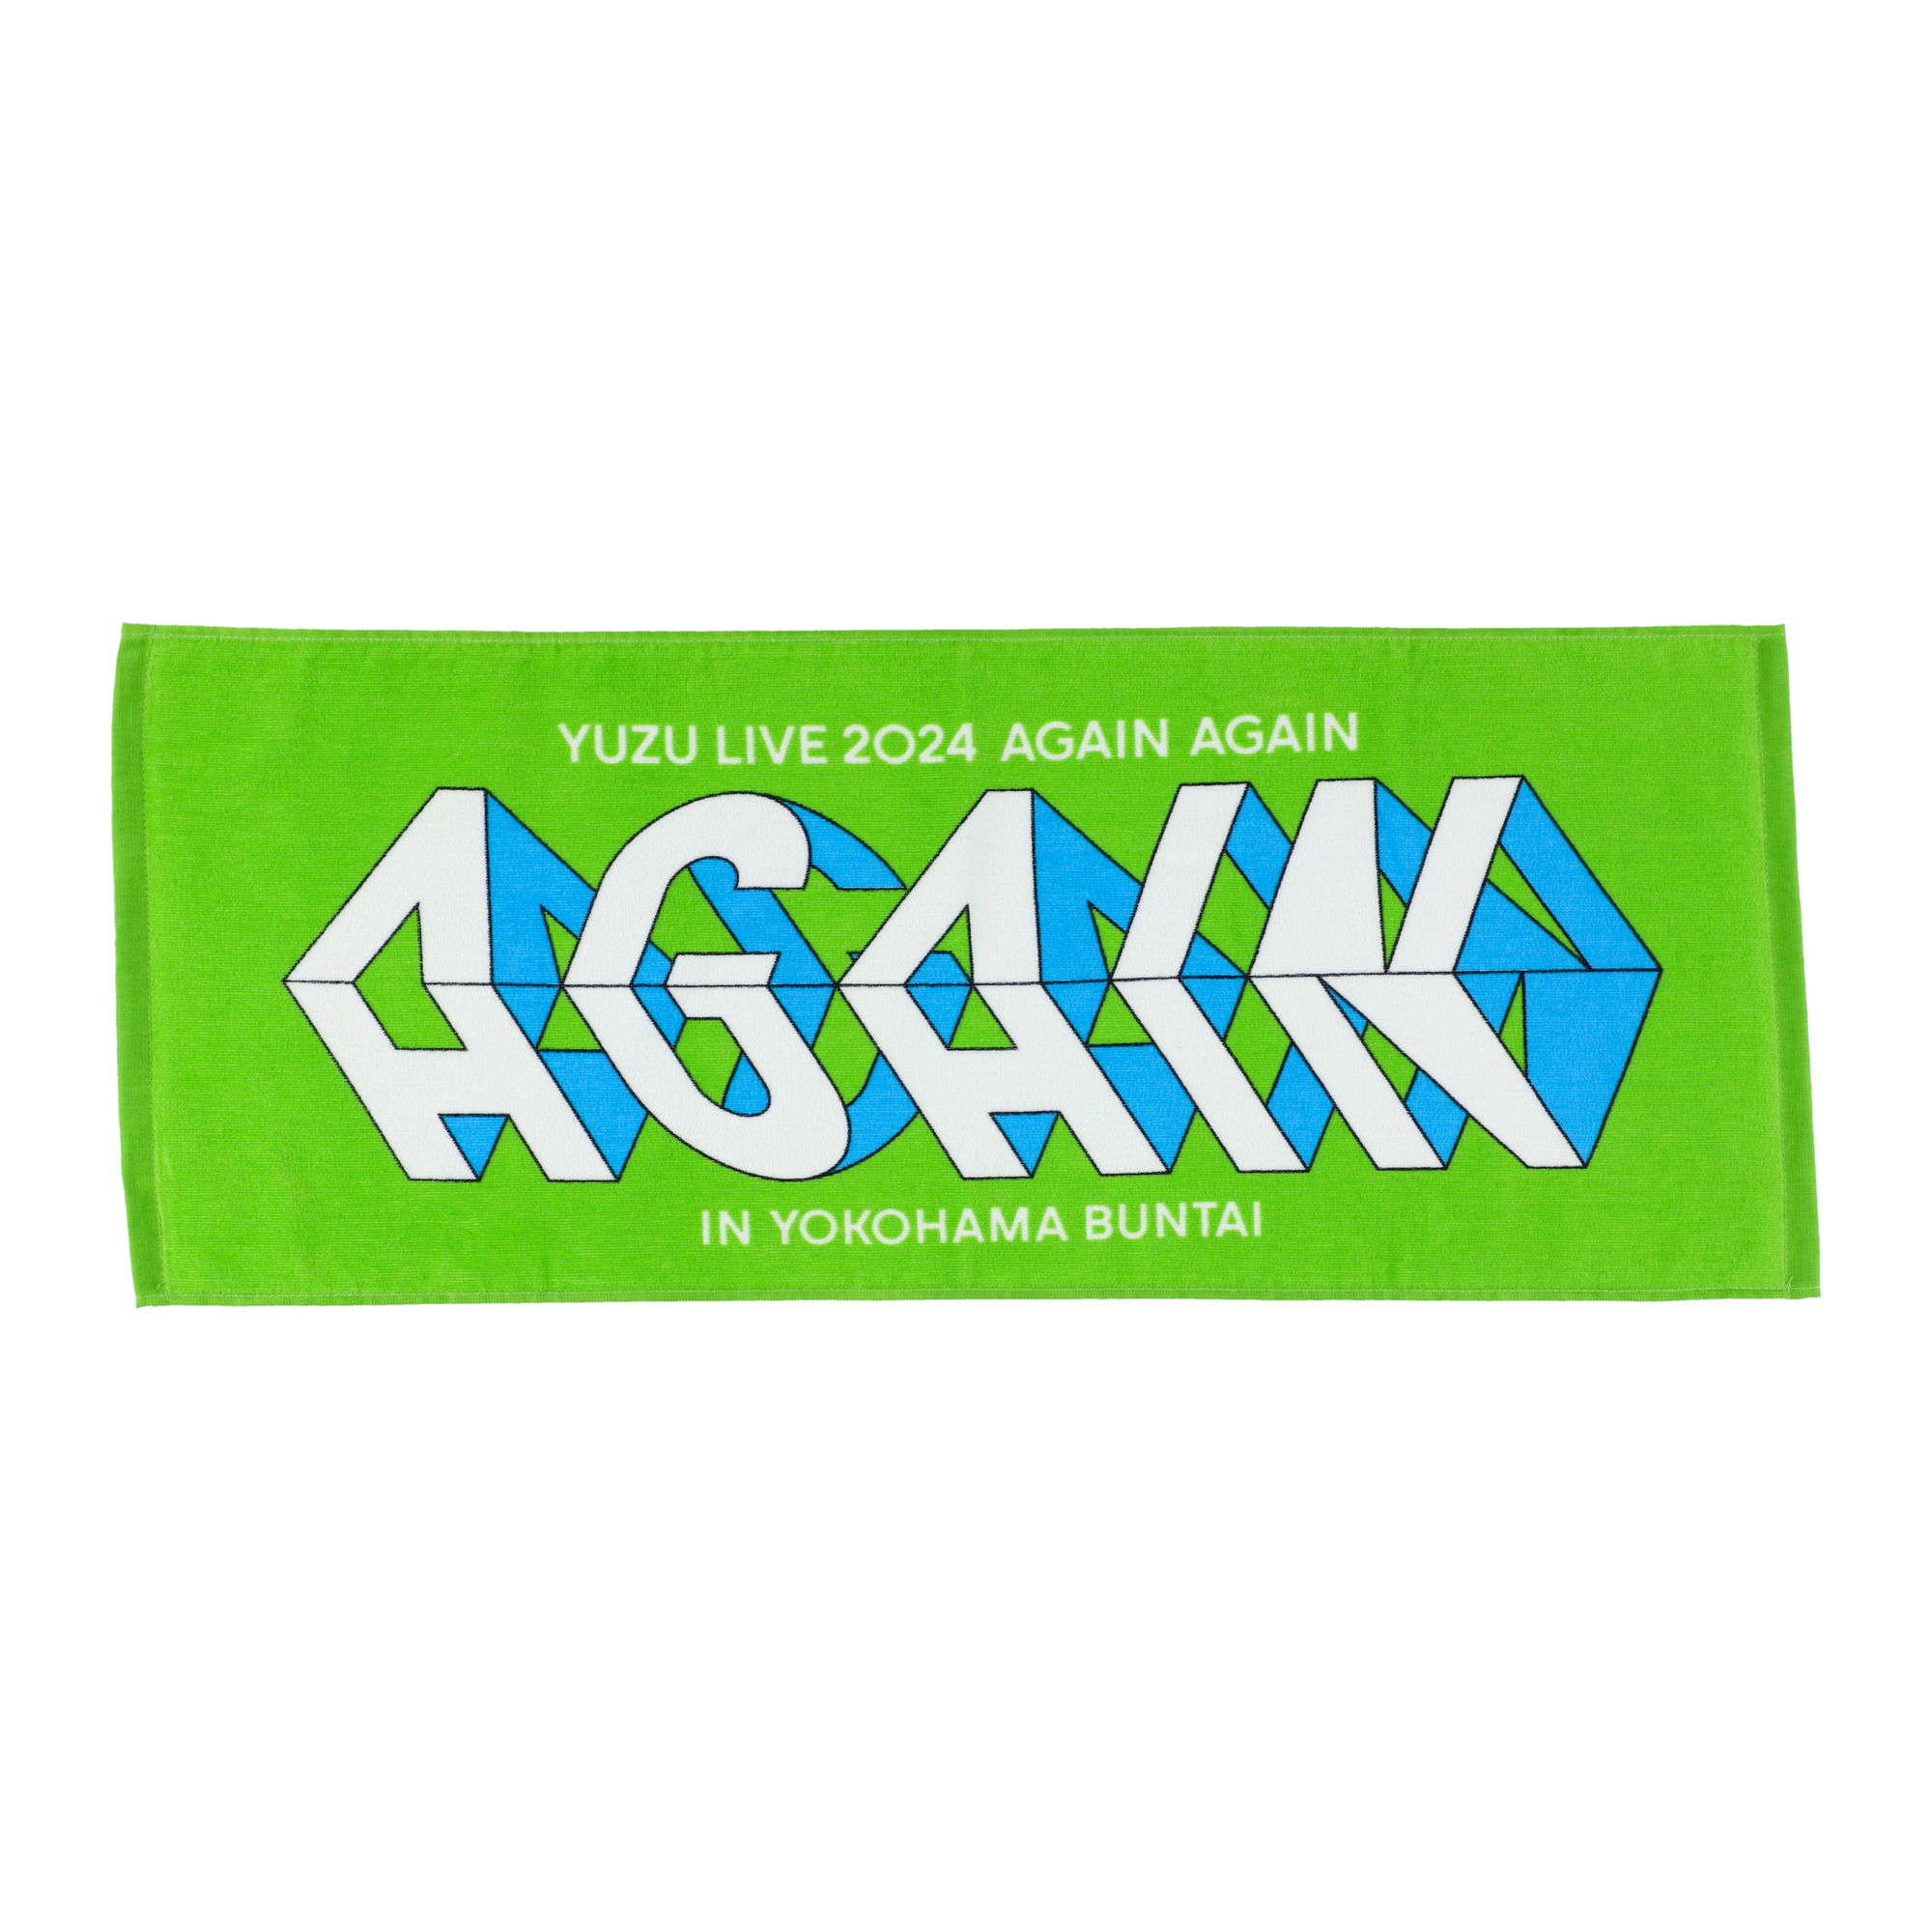 YUZU LIVE 2024 AGAIN AGAIN in 横浜BUNTAI」ライブグッズ販売の詳細 